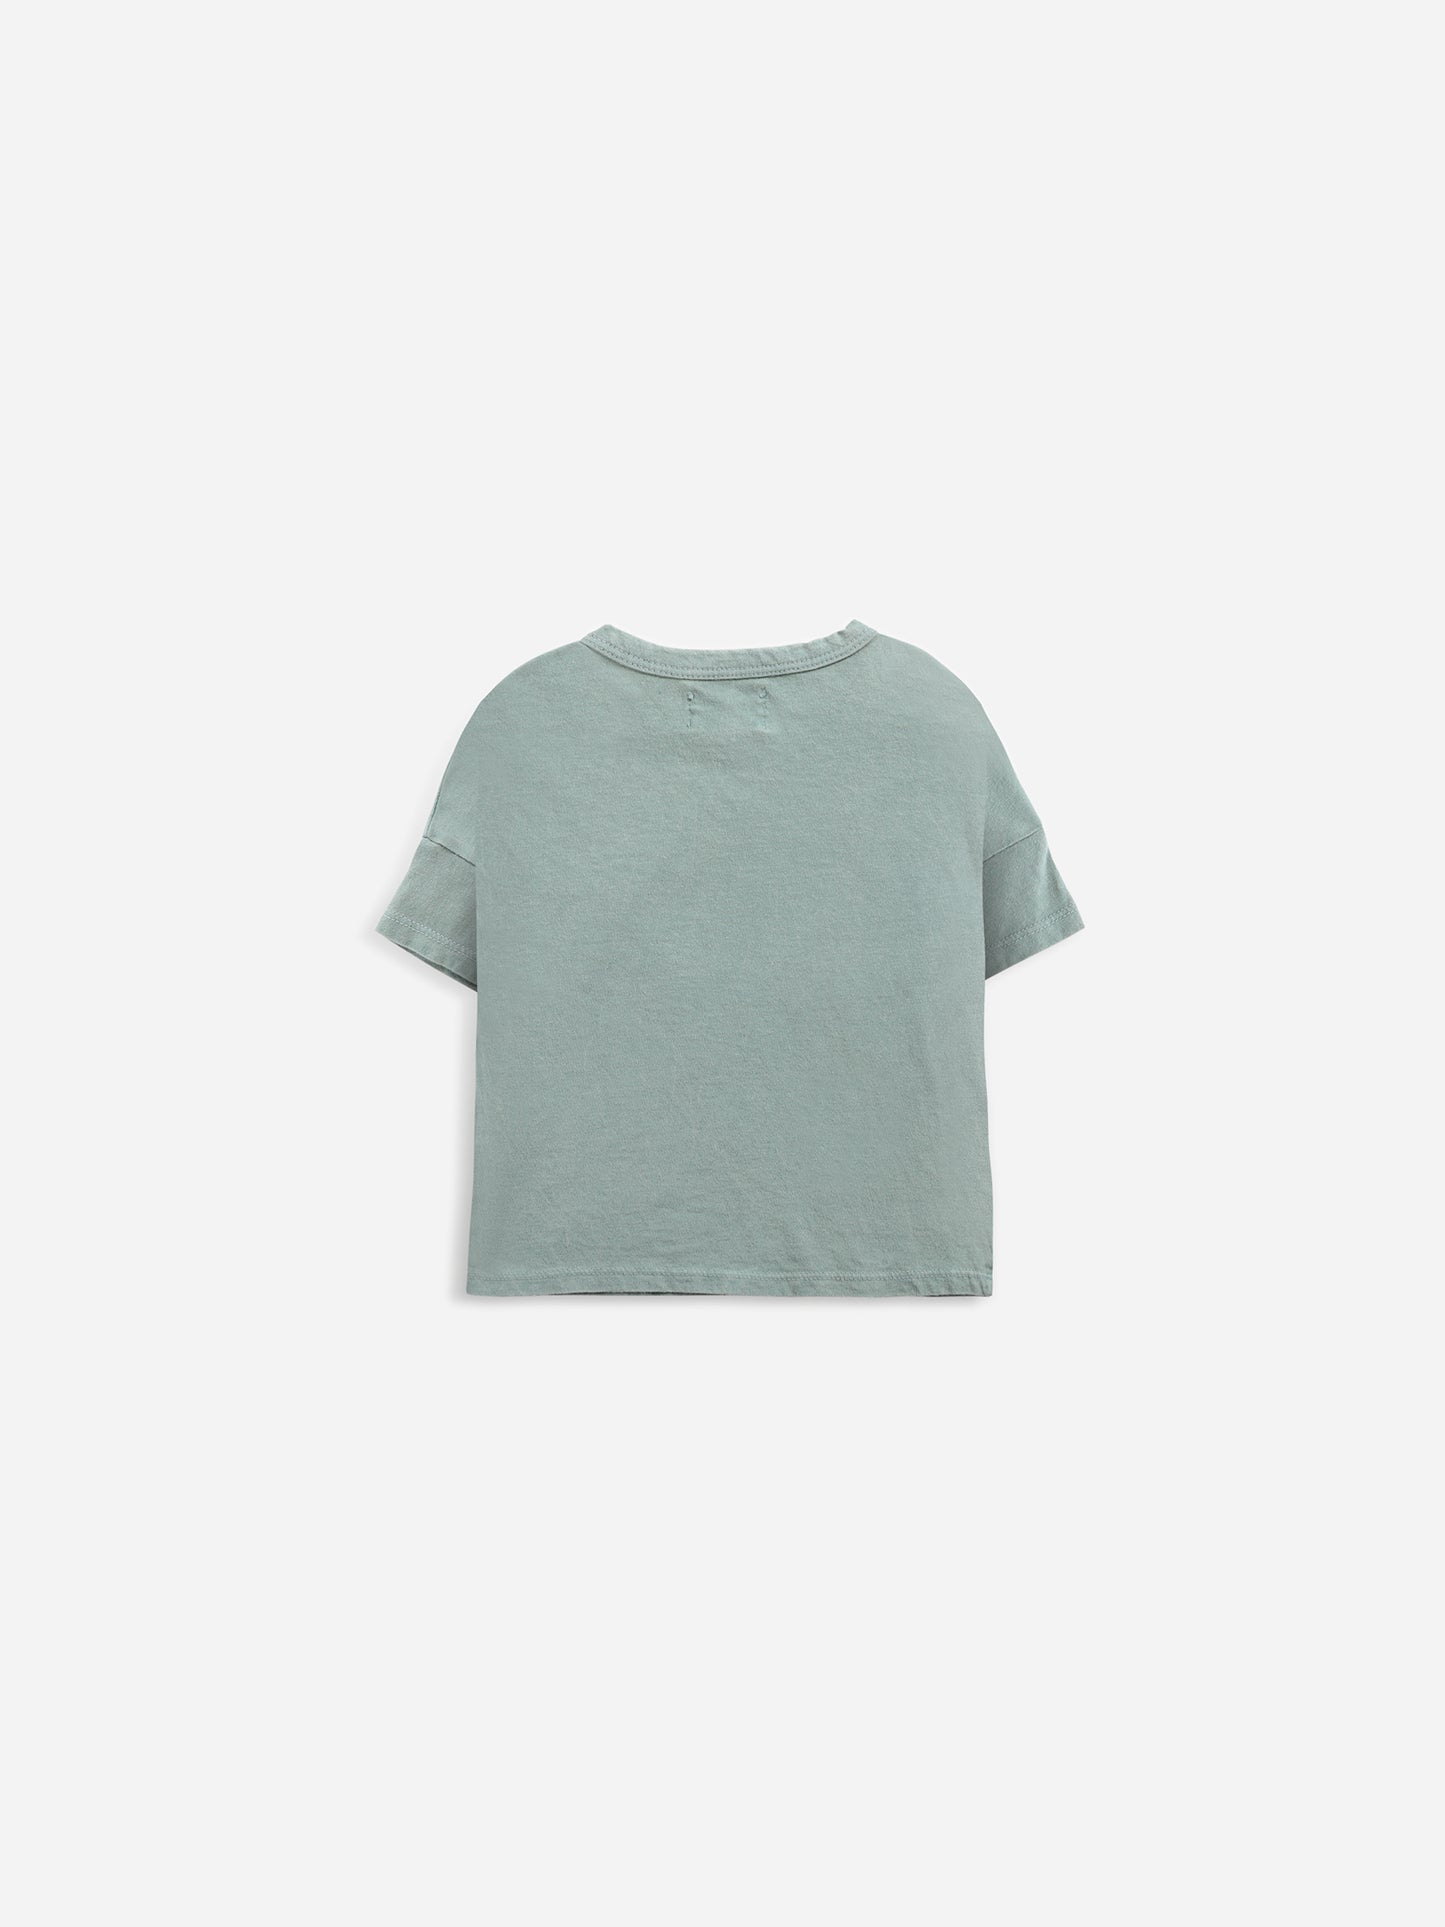 Ladybug Short Sleeve T-Shirt